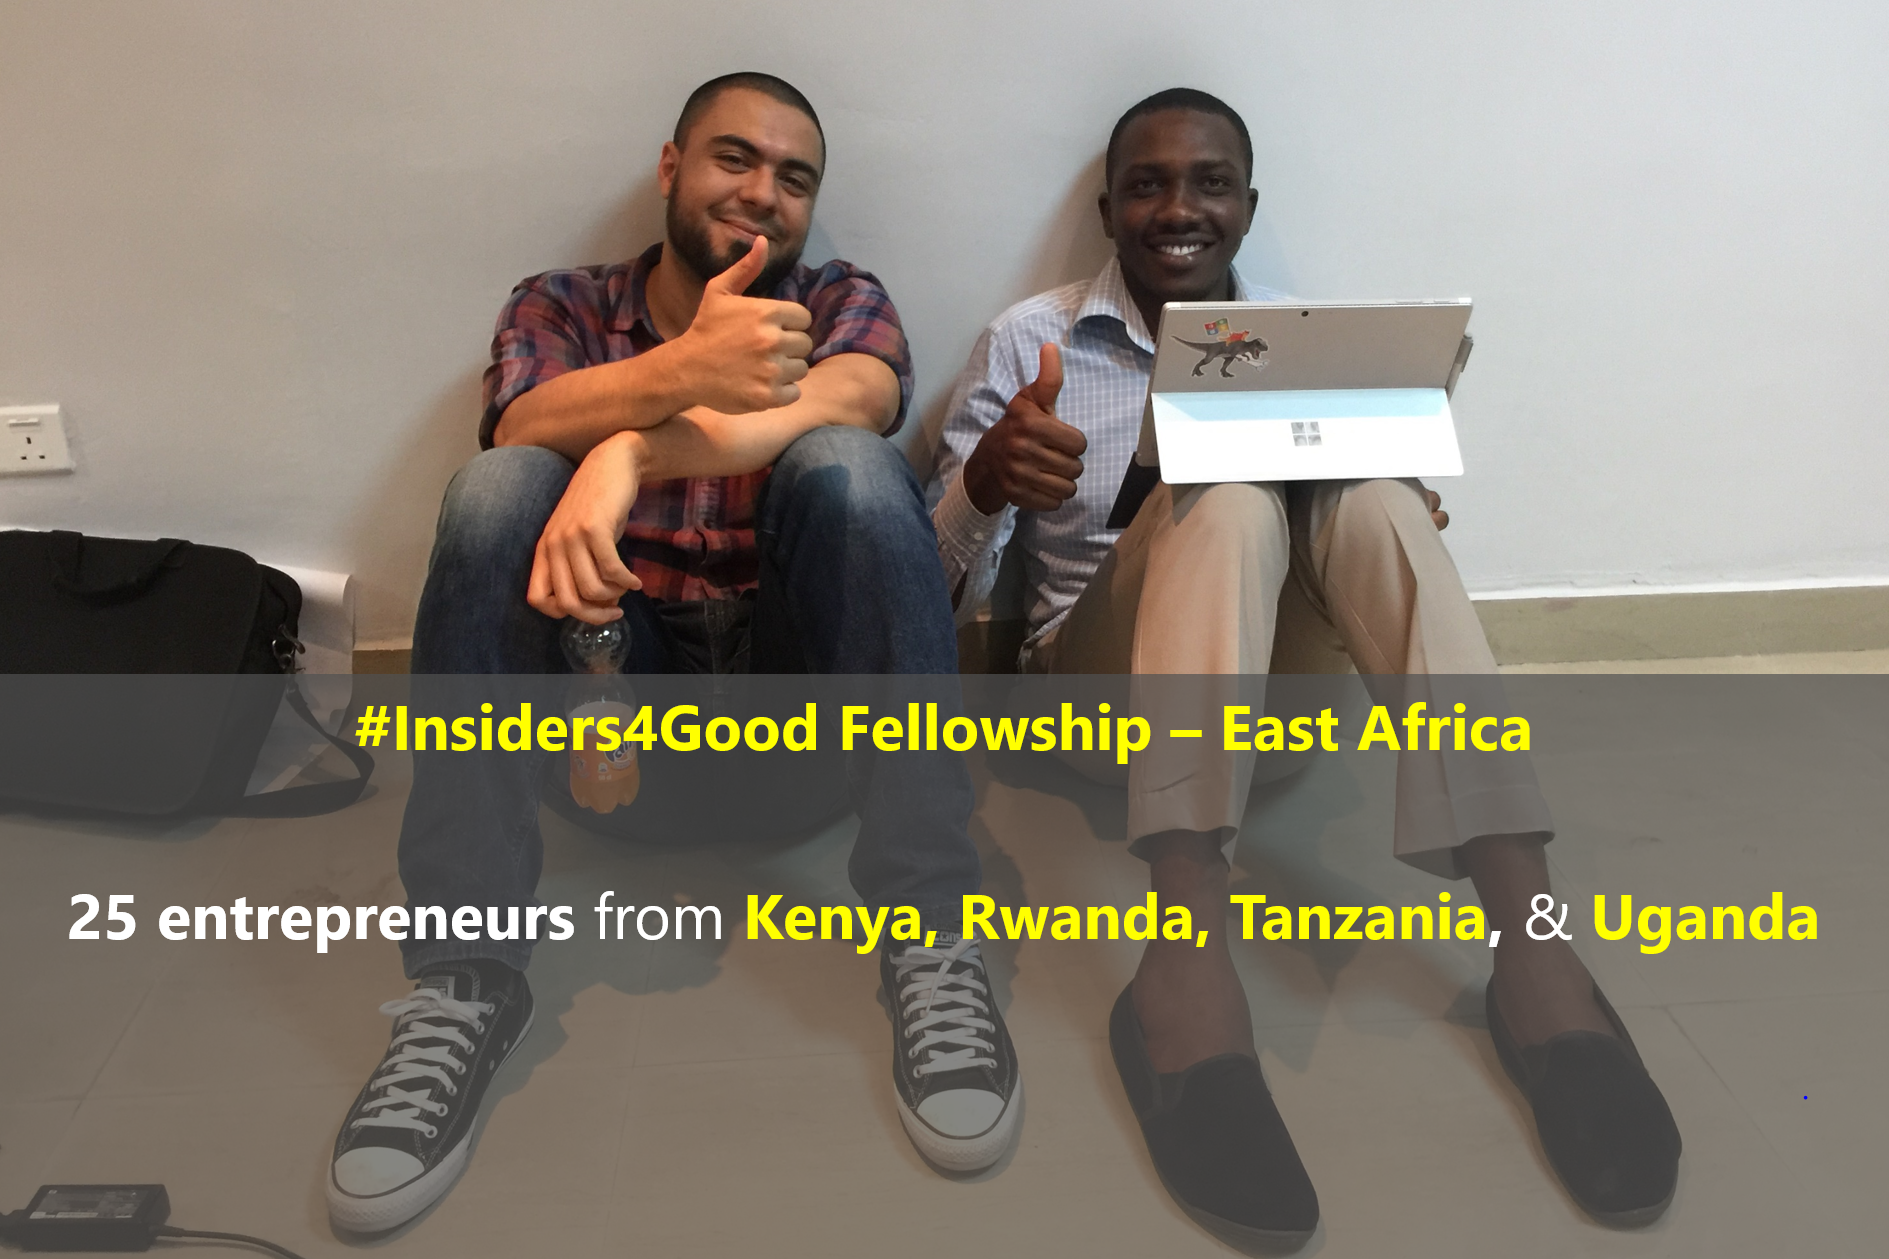 East Africa Fellowship.